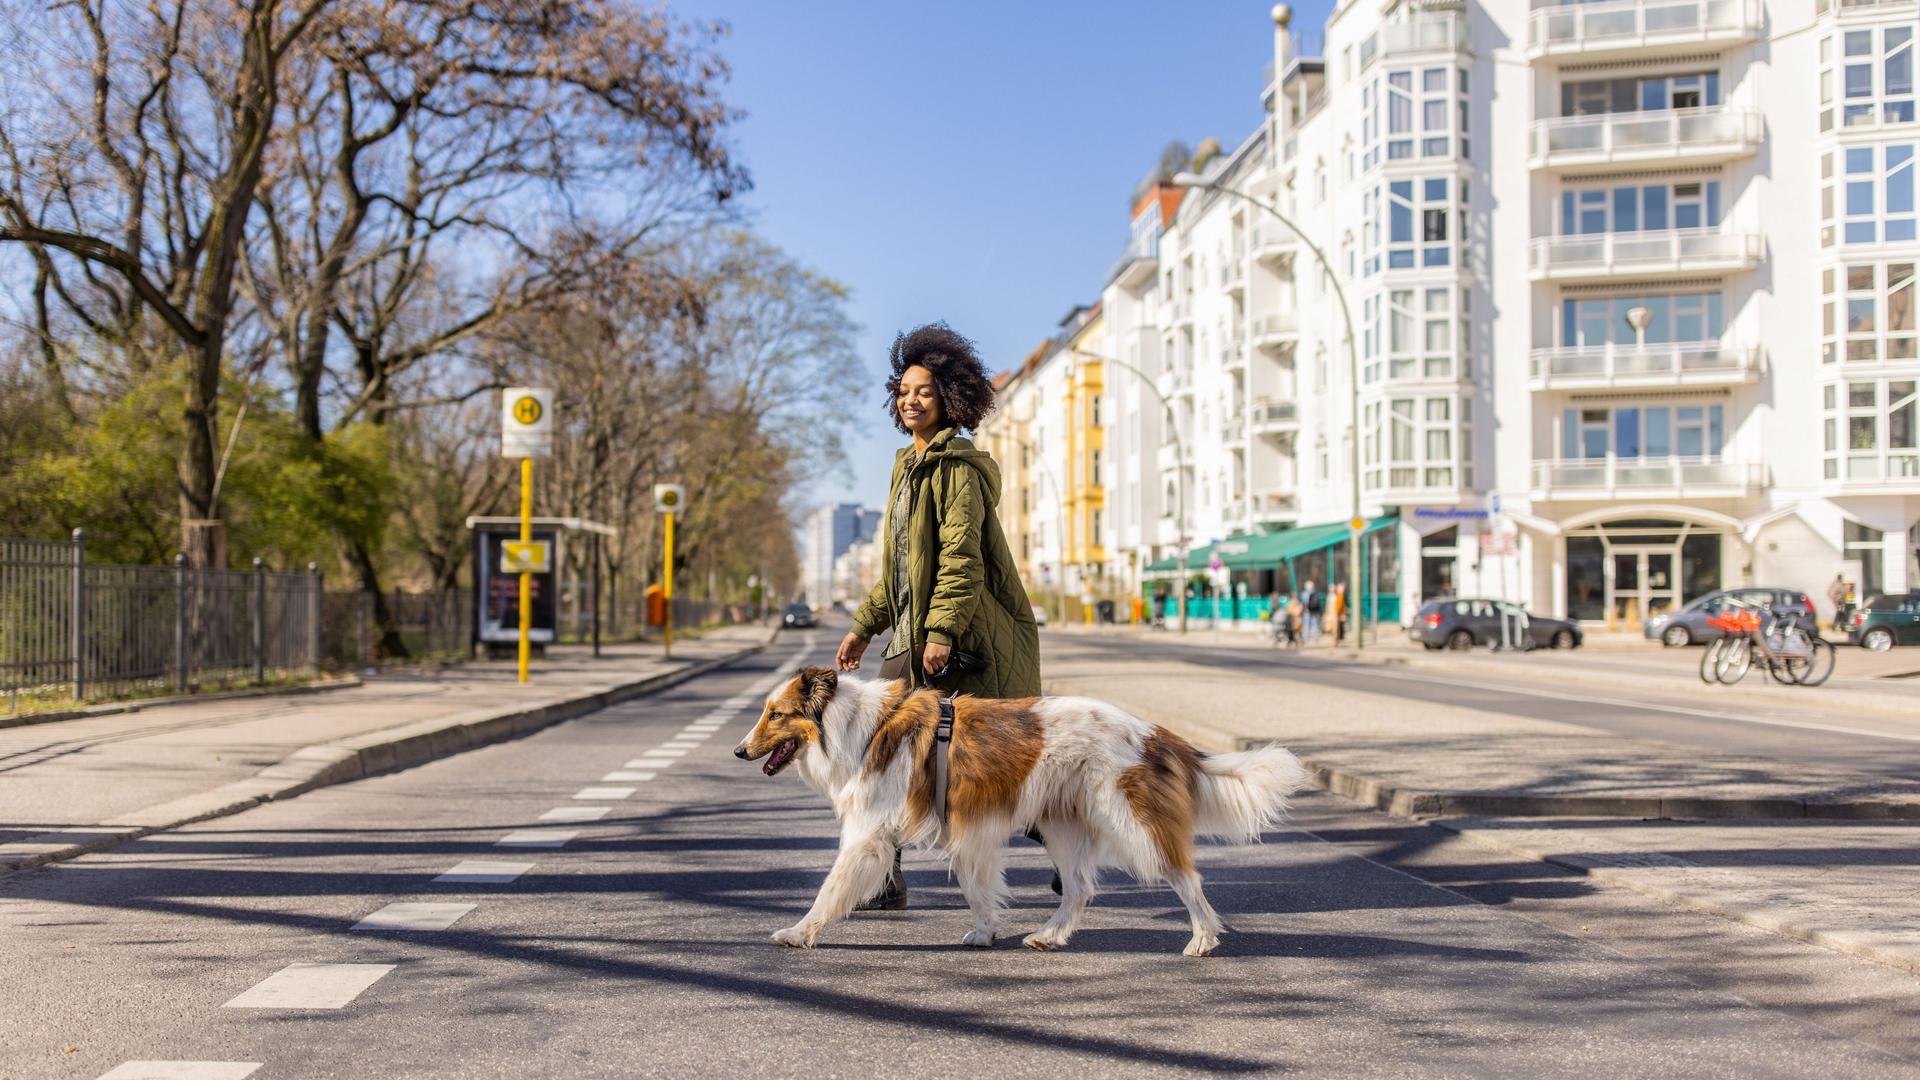 Junge, lächelnde Frau überquert eine Straße mit einem Hund an der Leine.